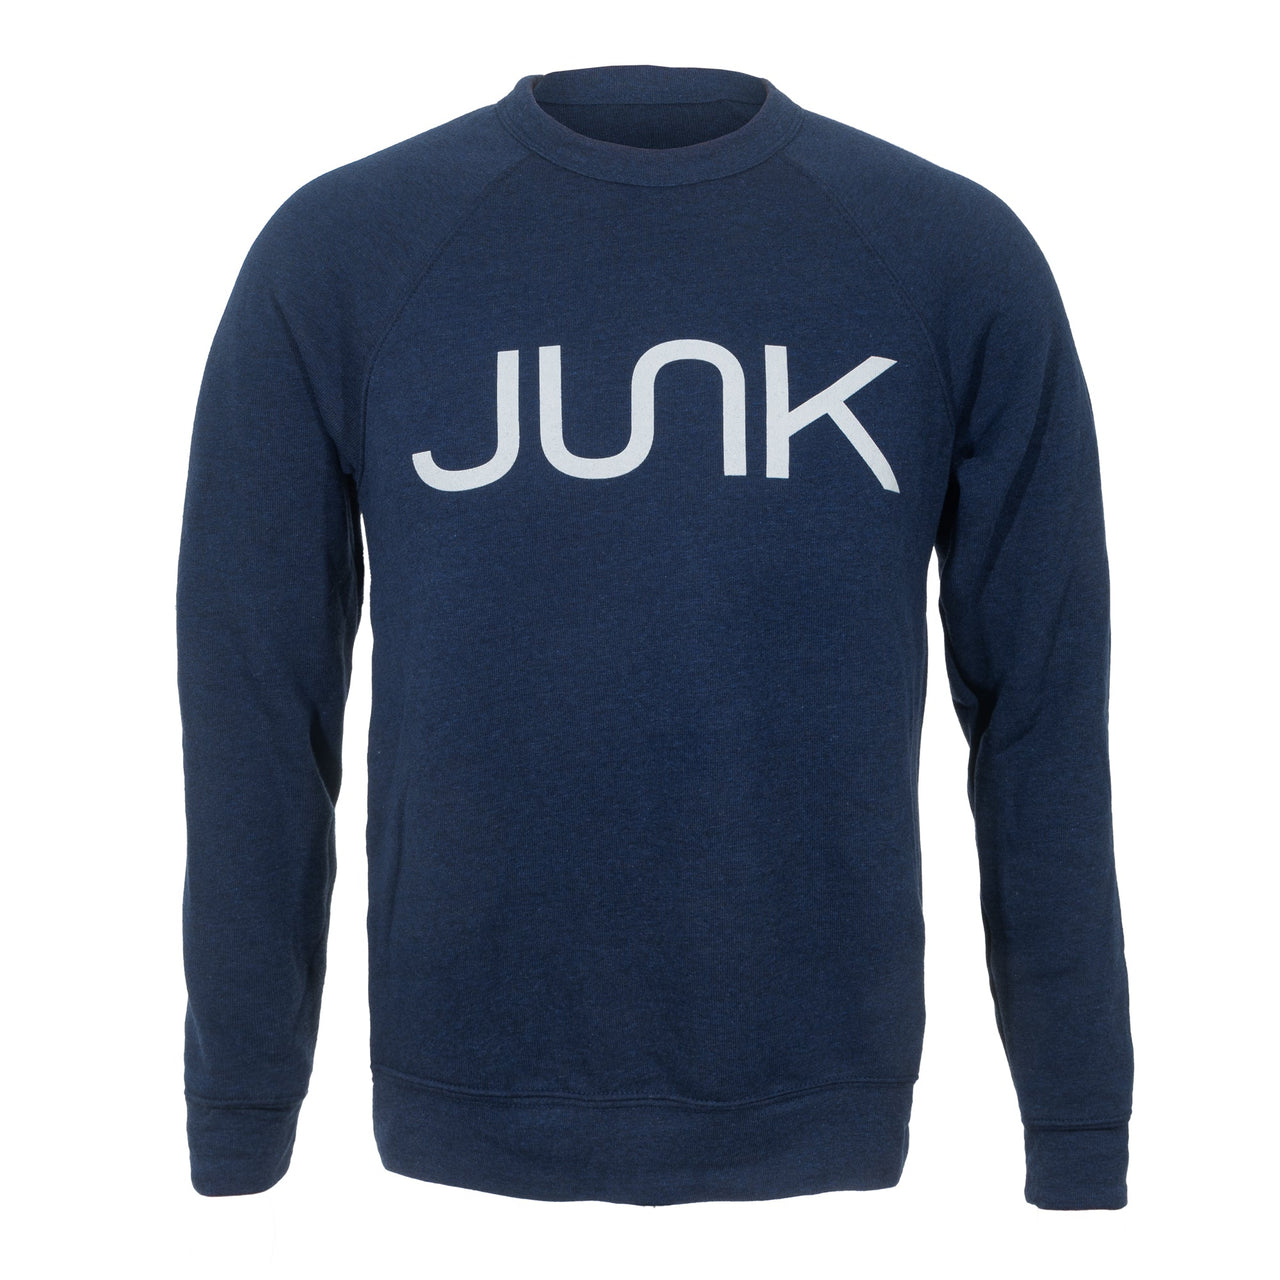 JUNK Heathered Navy Crew Sweatshirt